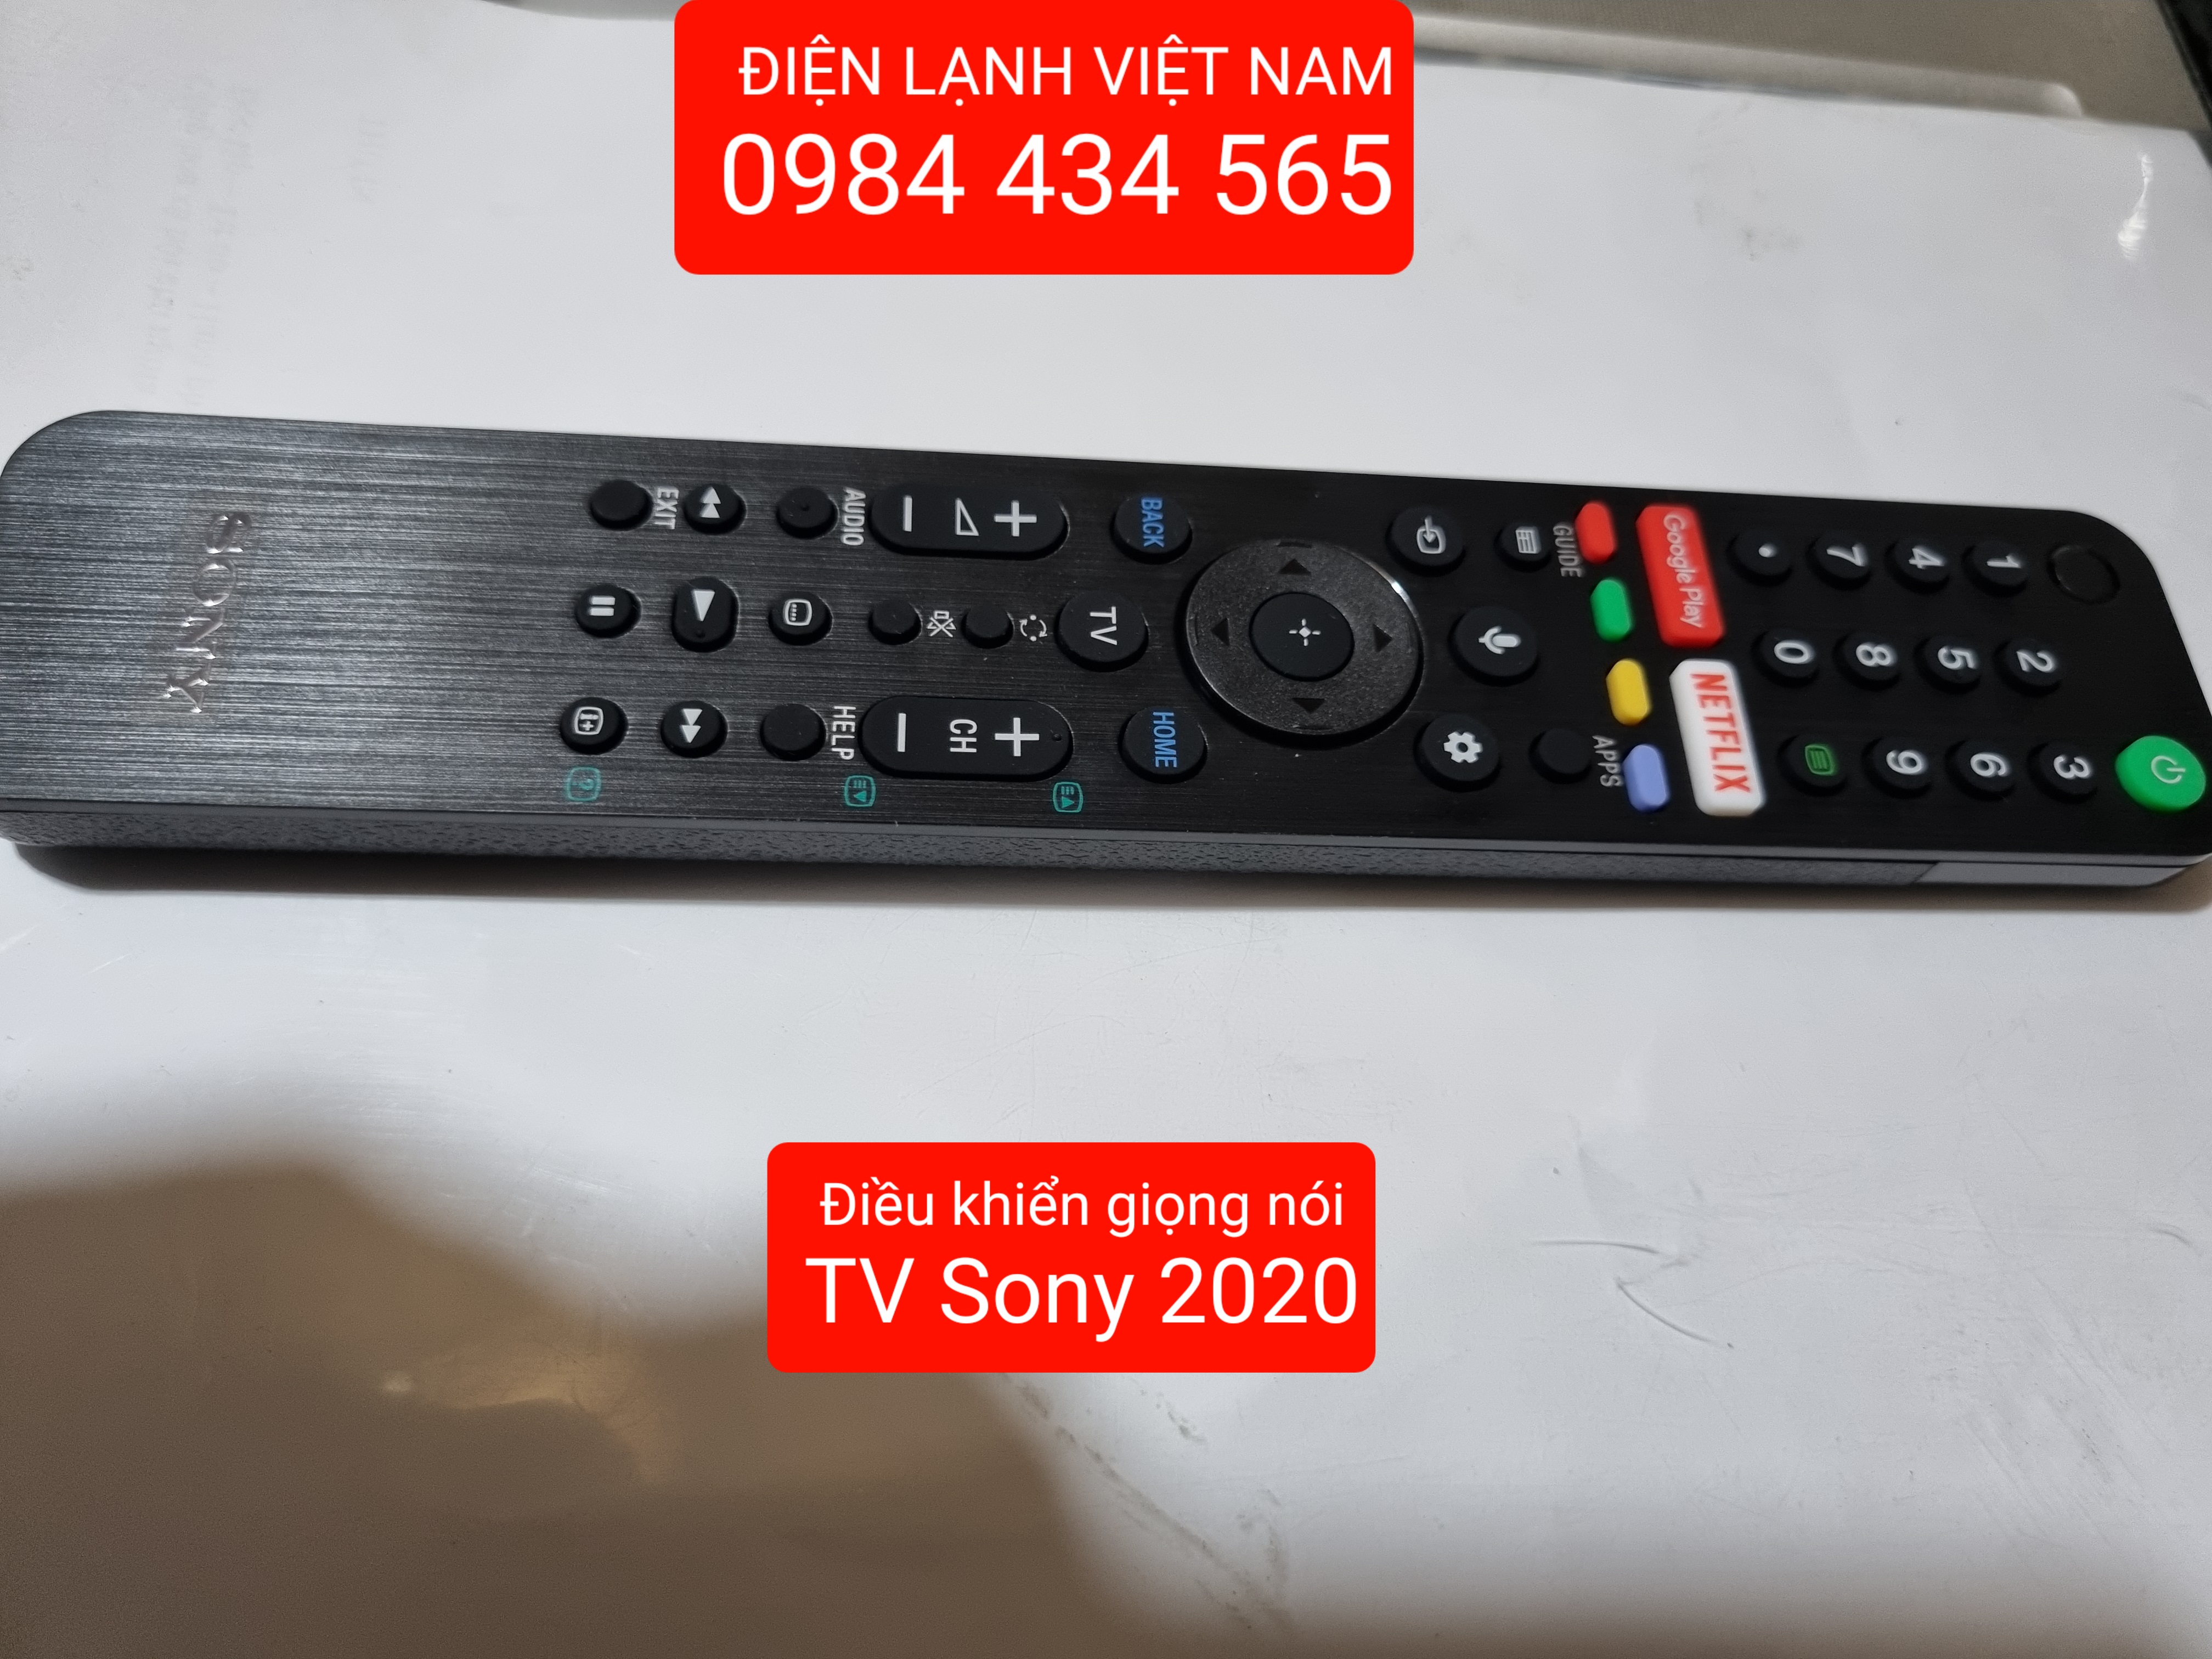 remote Điều khiển giọng nói cho TV Sony 2021/ remote Smart TV Sony có điều khiển giọng nói 2021